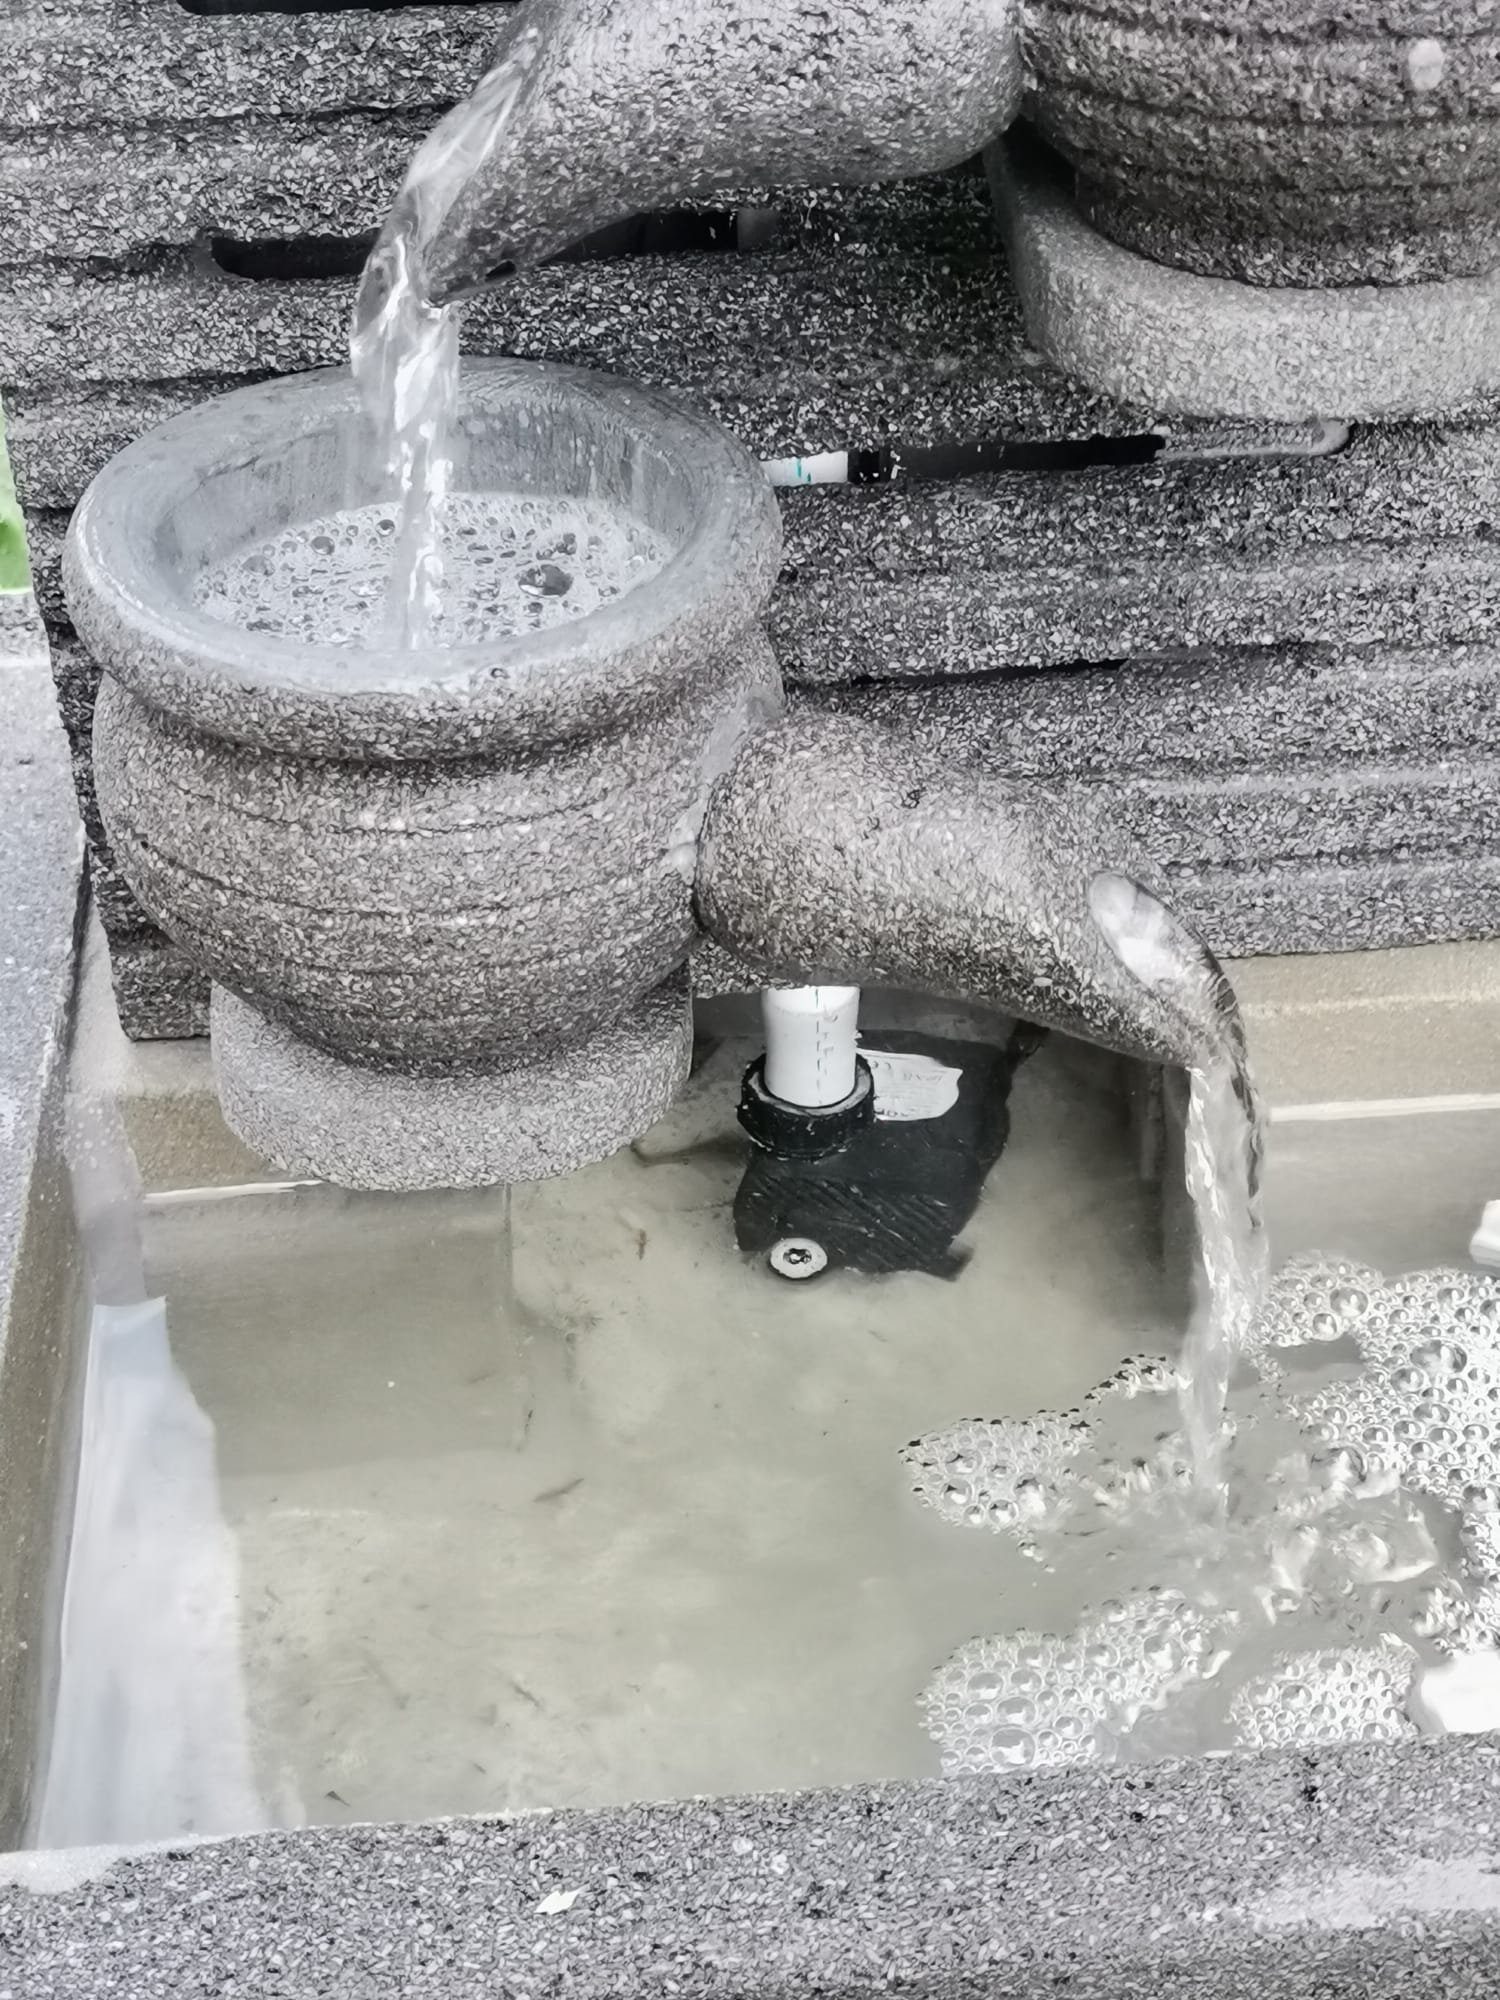 IDYL Gartenbrunnen Lavastein-Brunnen Beleuchtung, Wasserspiel mit mit Handarbeit IDYL witterungsbeständig leichten Einschüssen Naturprodukt